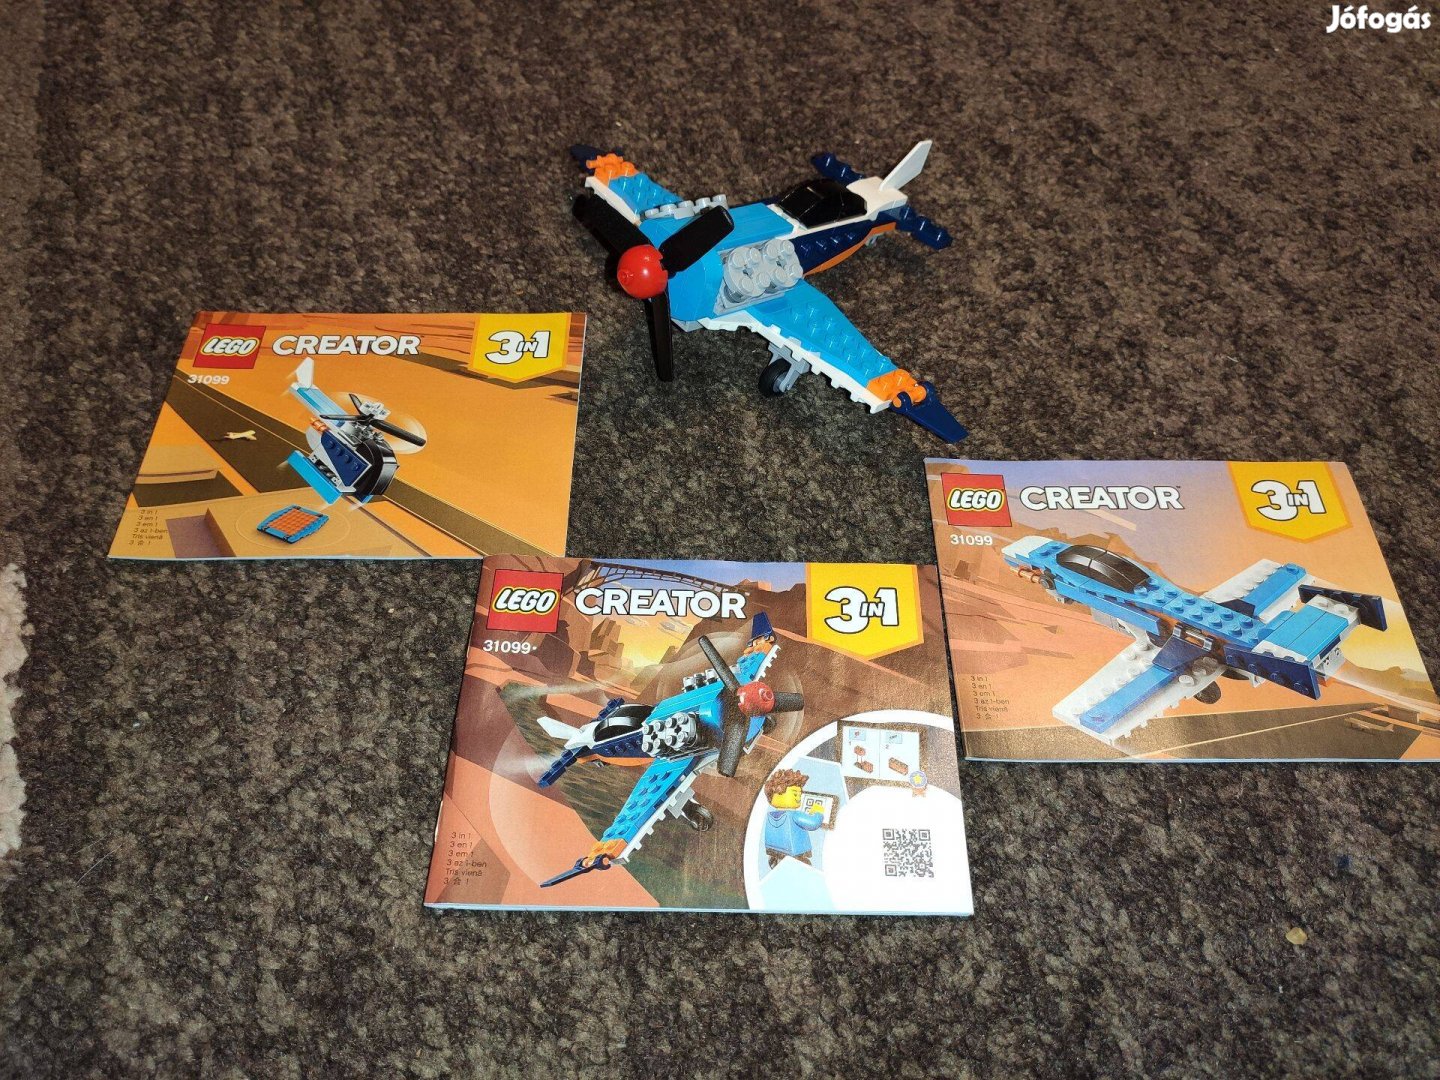 LEGO 31099 Creator - Légcsavaros repülőgép leírással hiánytalan 2500